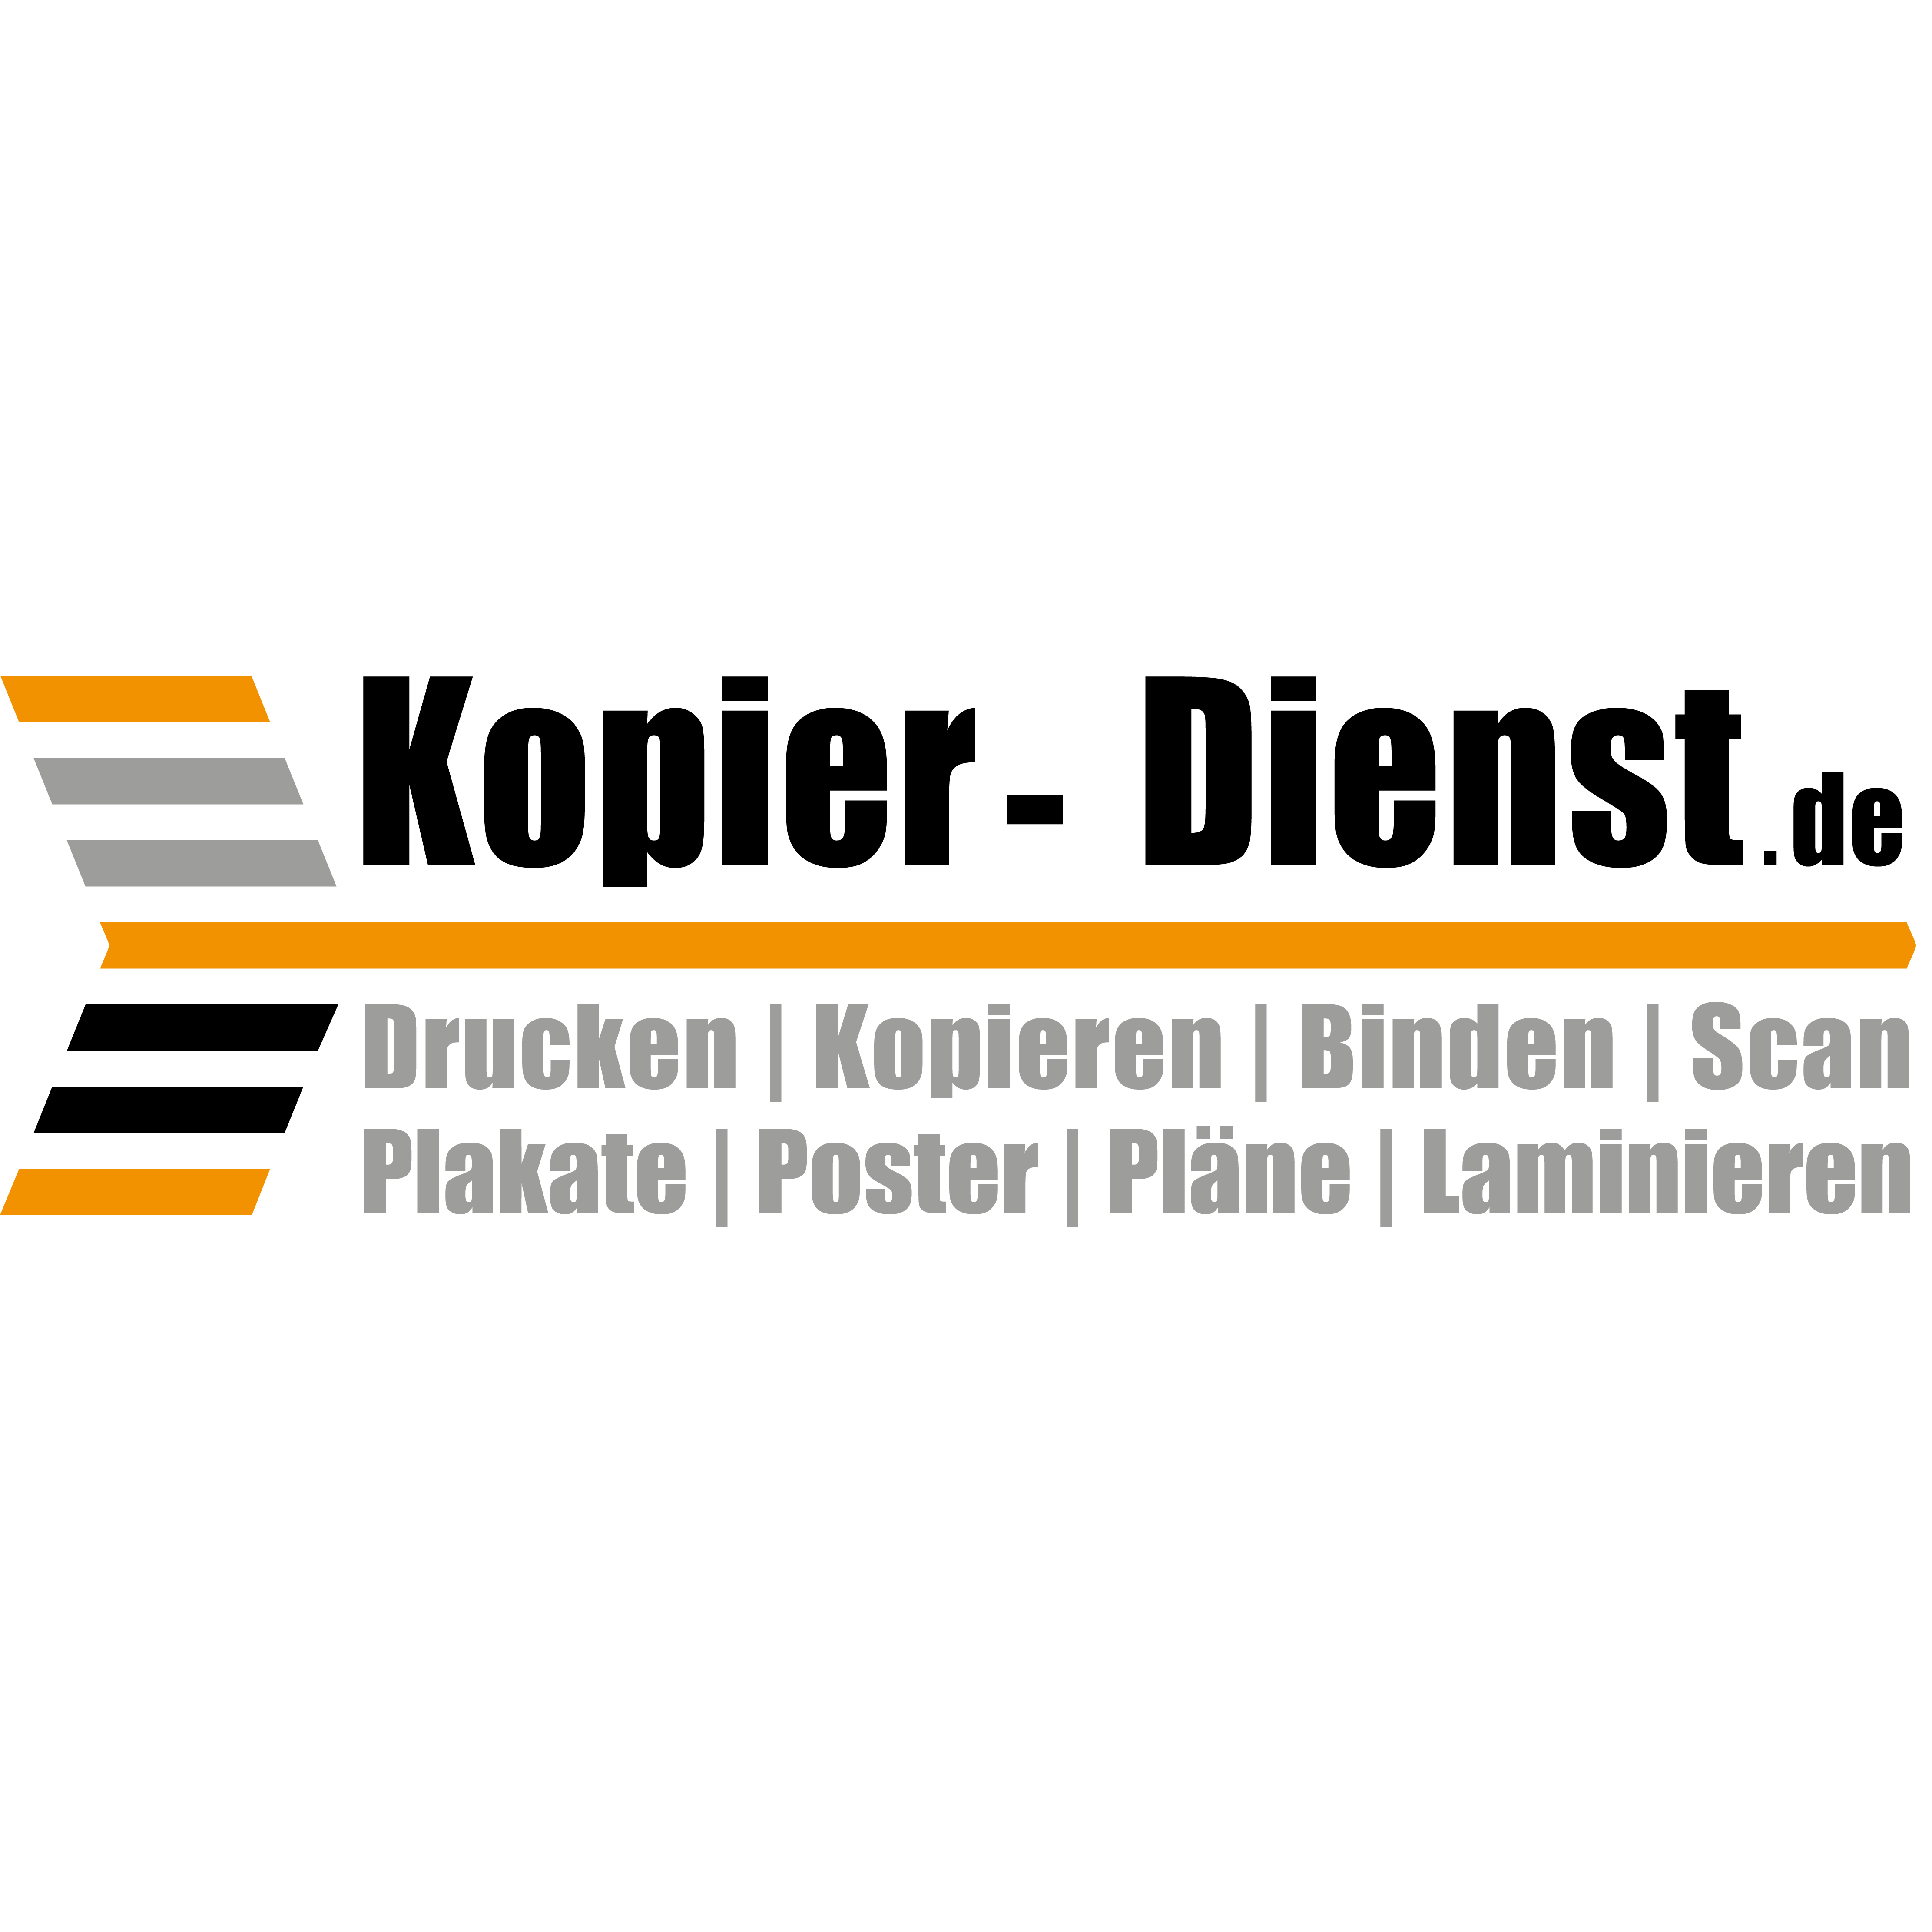 Kopier-dienst.de in Würzburg - Logo